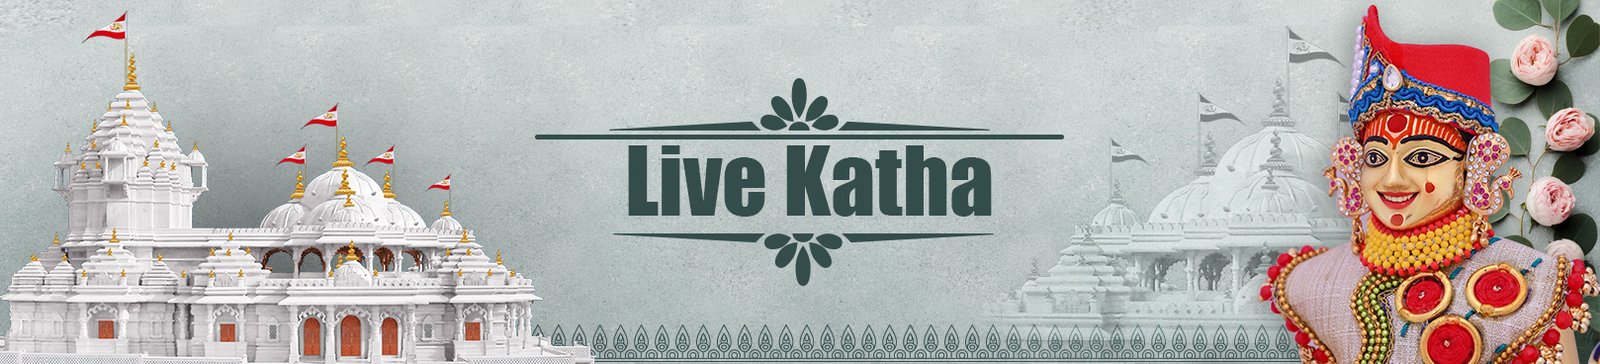 Live Katha